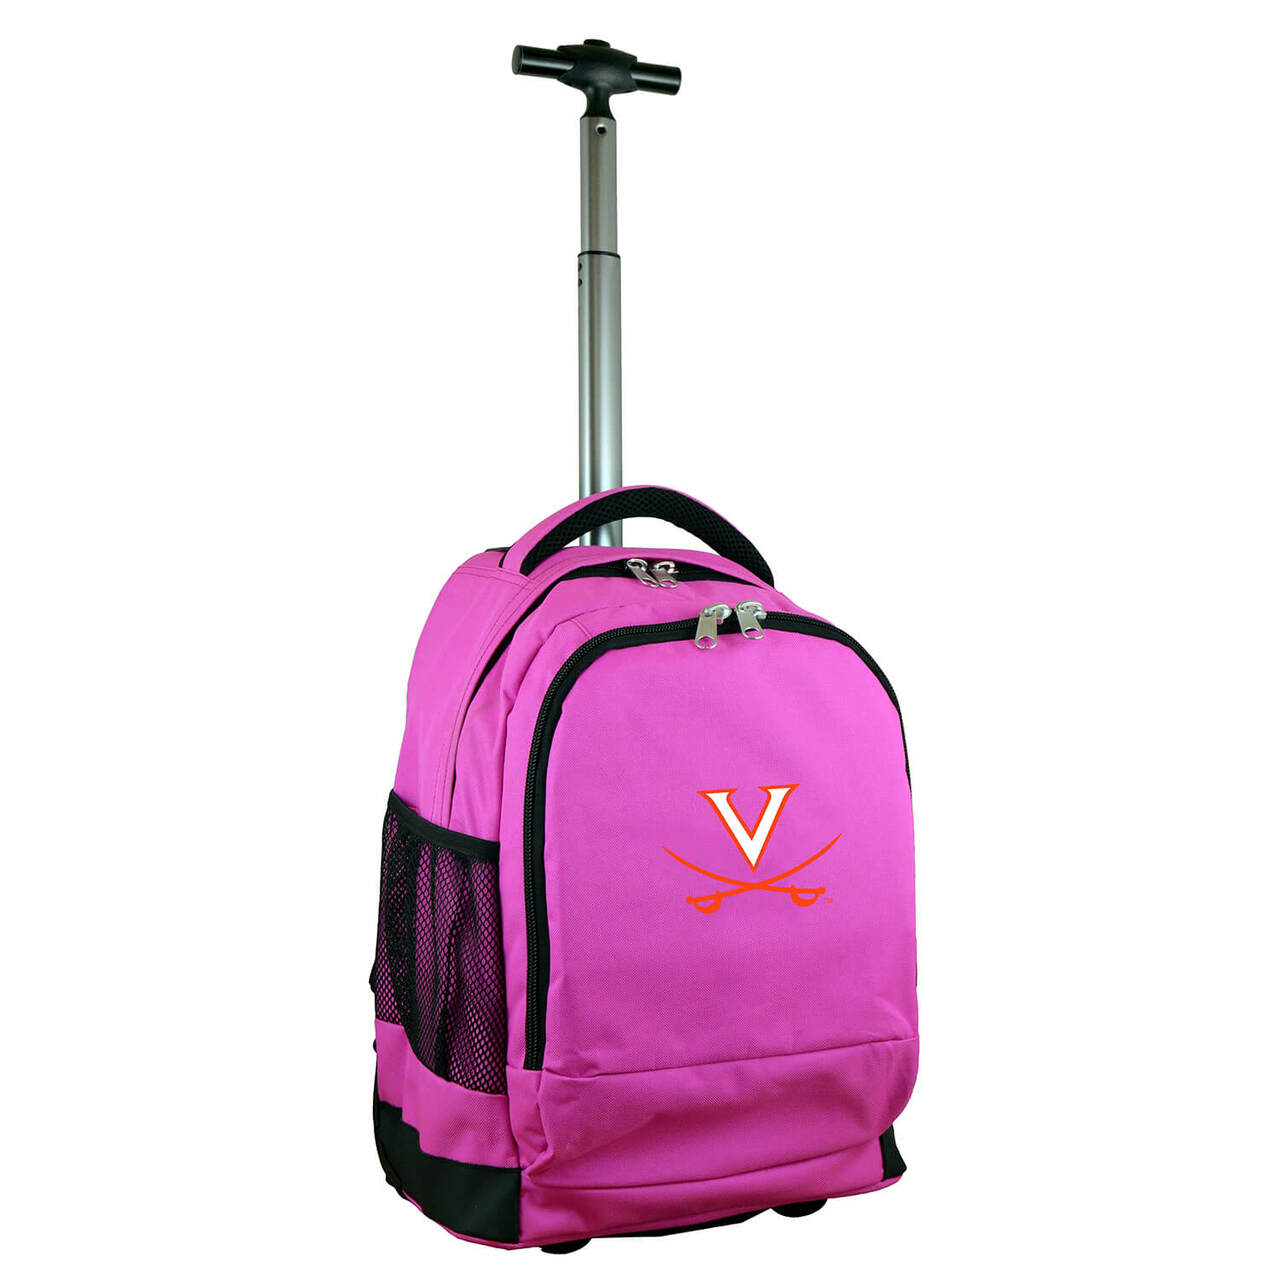 Virginia Premium Wheeled Backpack in Pink